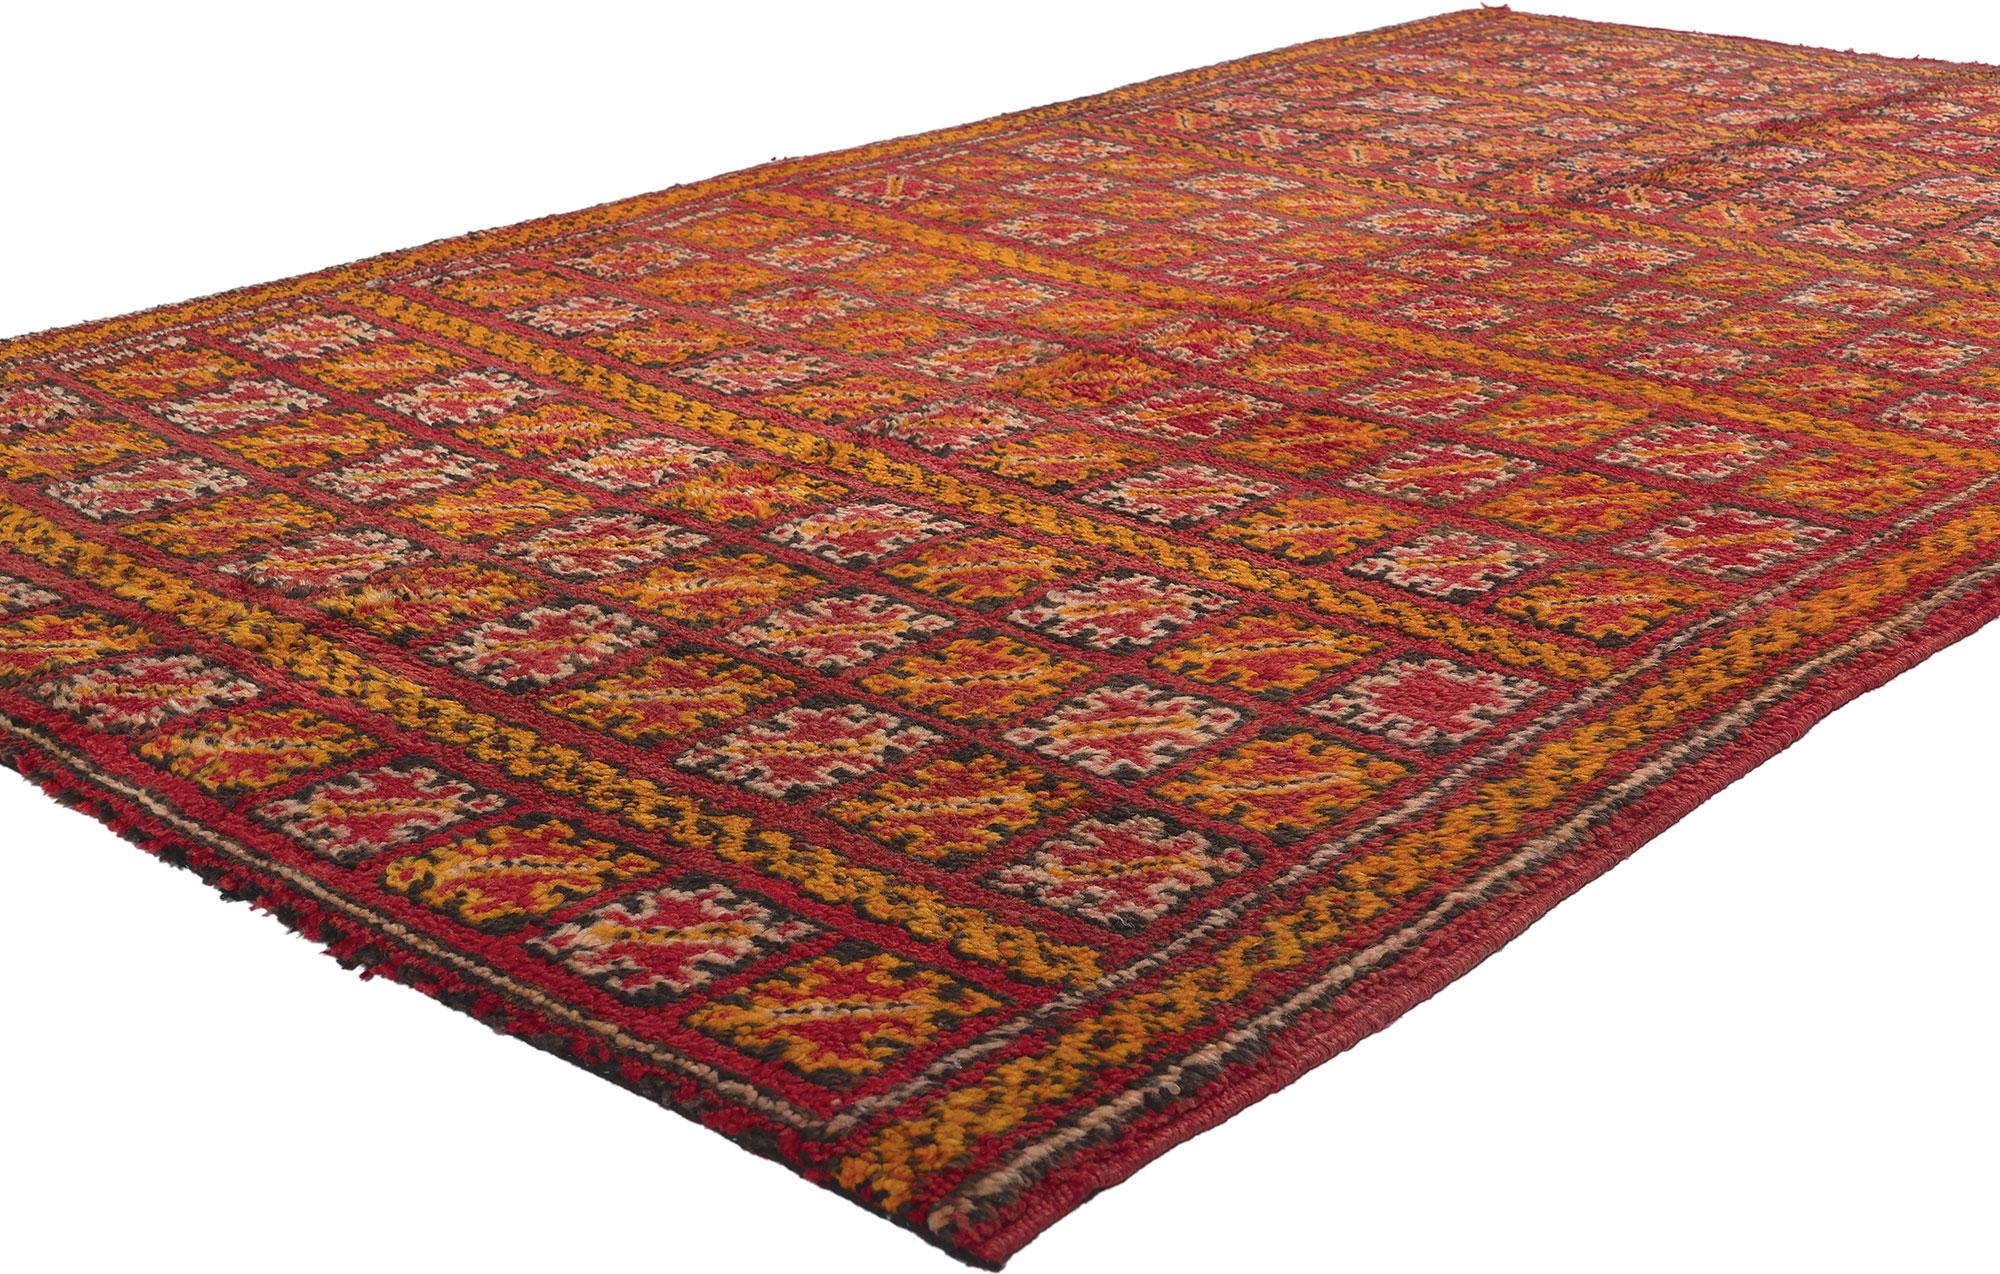 21483 Vintage Rot Beni MGuild Marokkanischer Teppich, 04'08 x 07'08. Begeben Sie sich mit unserem handgeknüpften Vintage-Teppich Beni MGuild auf eine lebhafte visuelle Odyssee durch die reiche Geschichte der marokkanischen Kultur - ein schillerndes